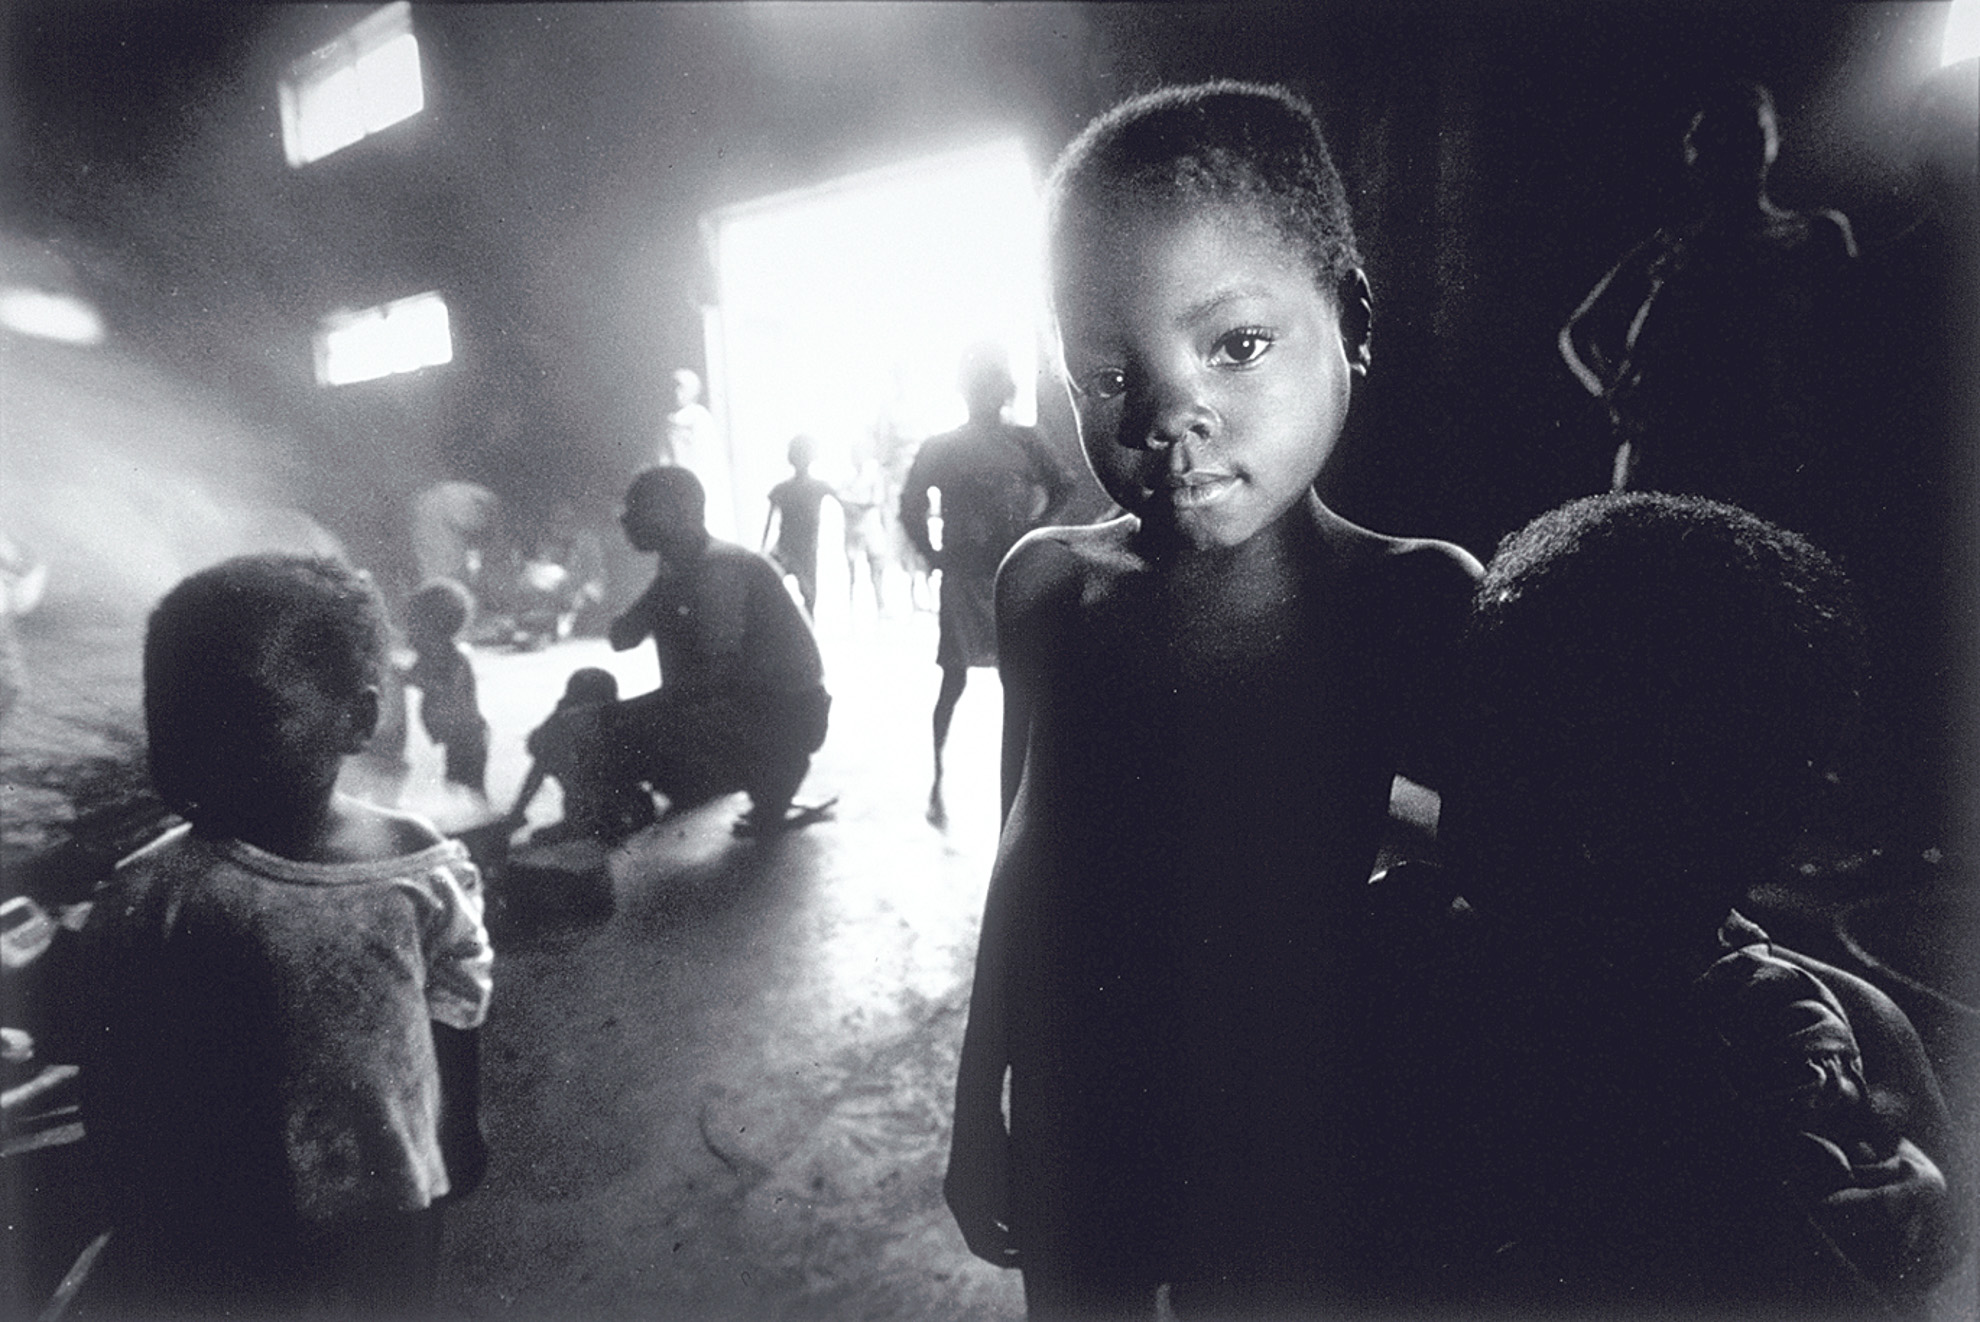 Almacén para personas desplazadas, Malange, Angola, octubre 1999. (Seleccionada).